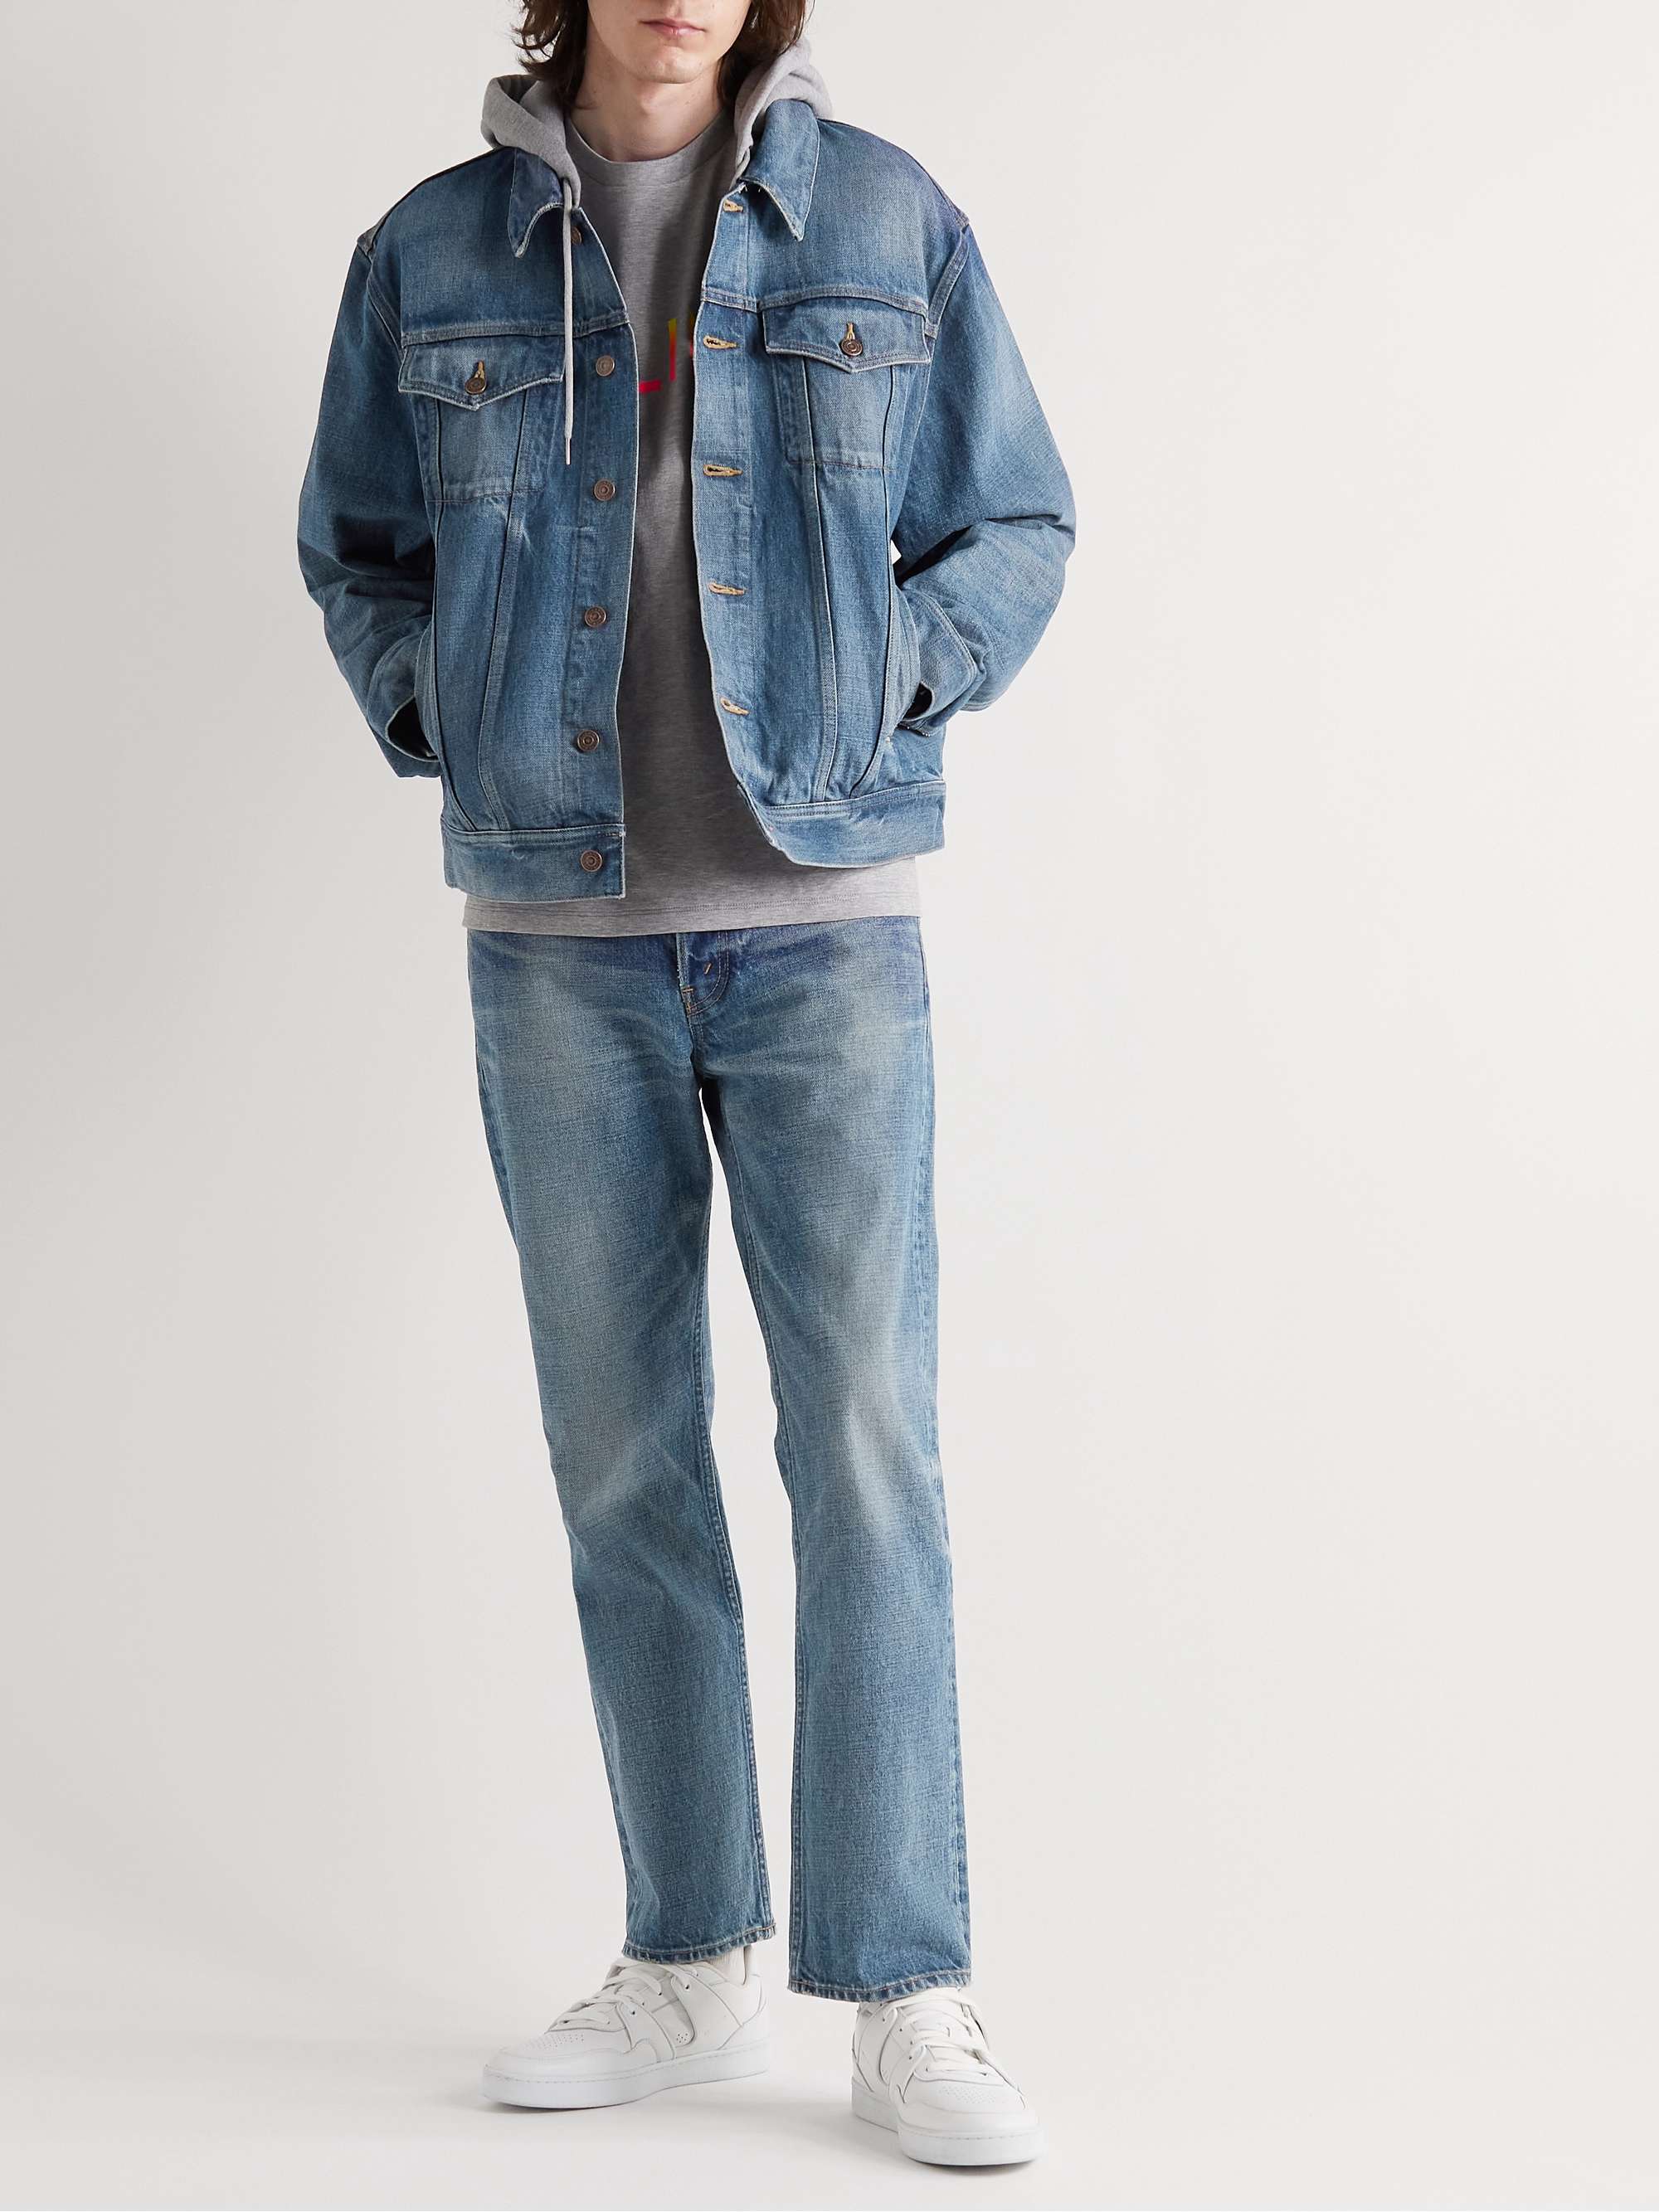 CELINE HOMME Kurt Straight-Leg Jeans for Men | MR PORTER